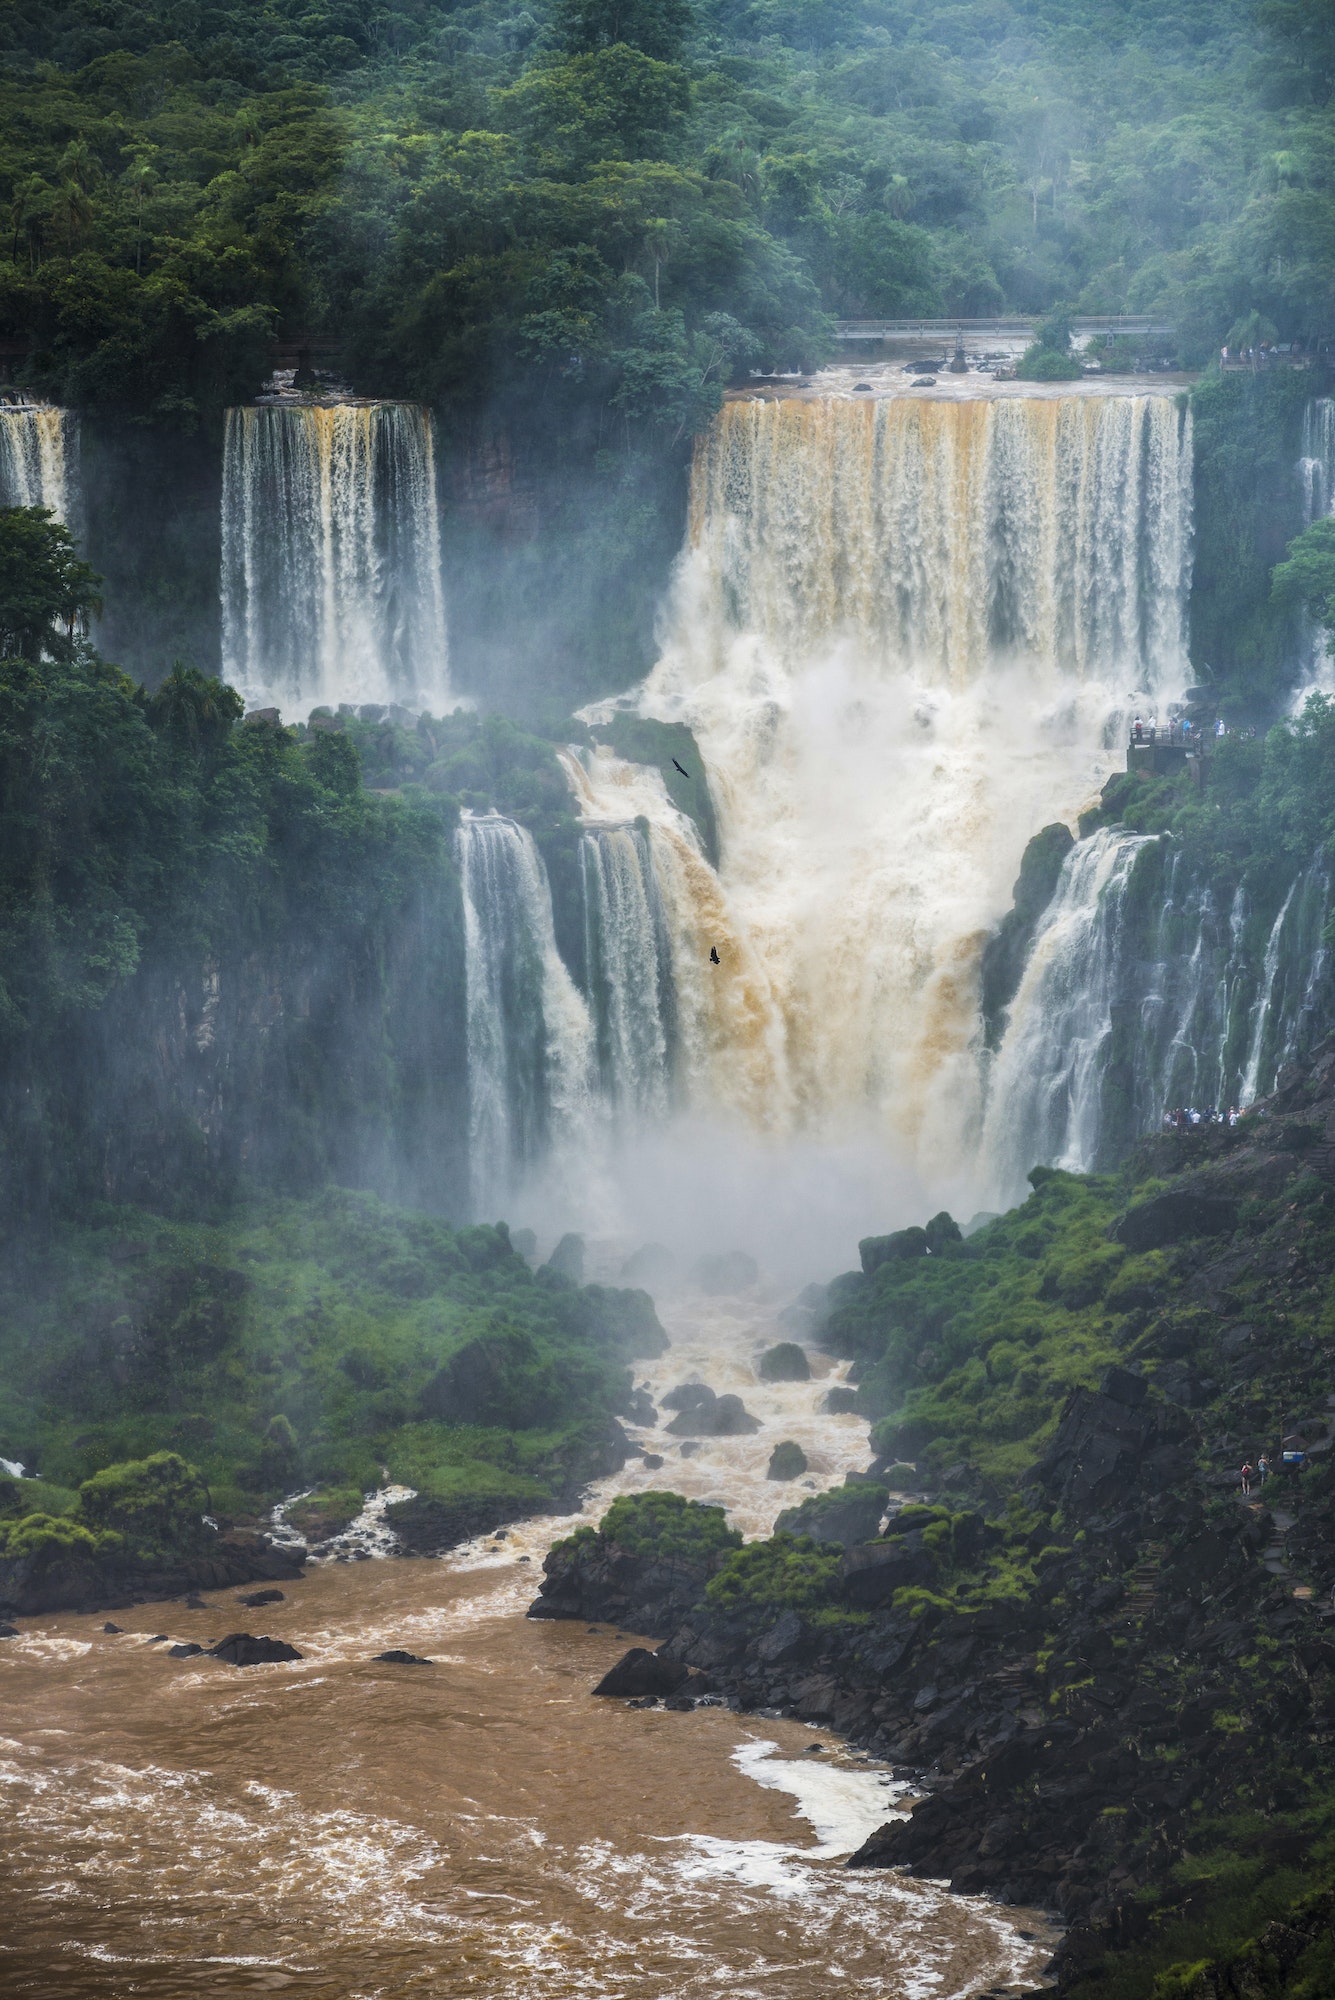 Iguazu Falls (Cataratas del Iguacu), Argentinische Seite, gesehen von der Brazilianischen Seite, Brazil Argentina Pa